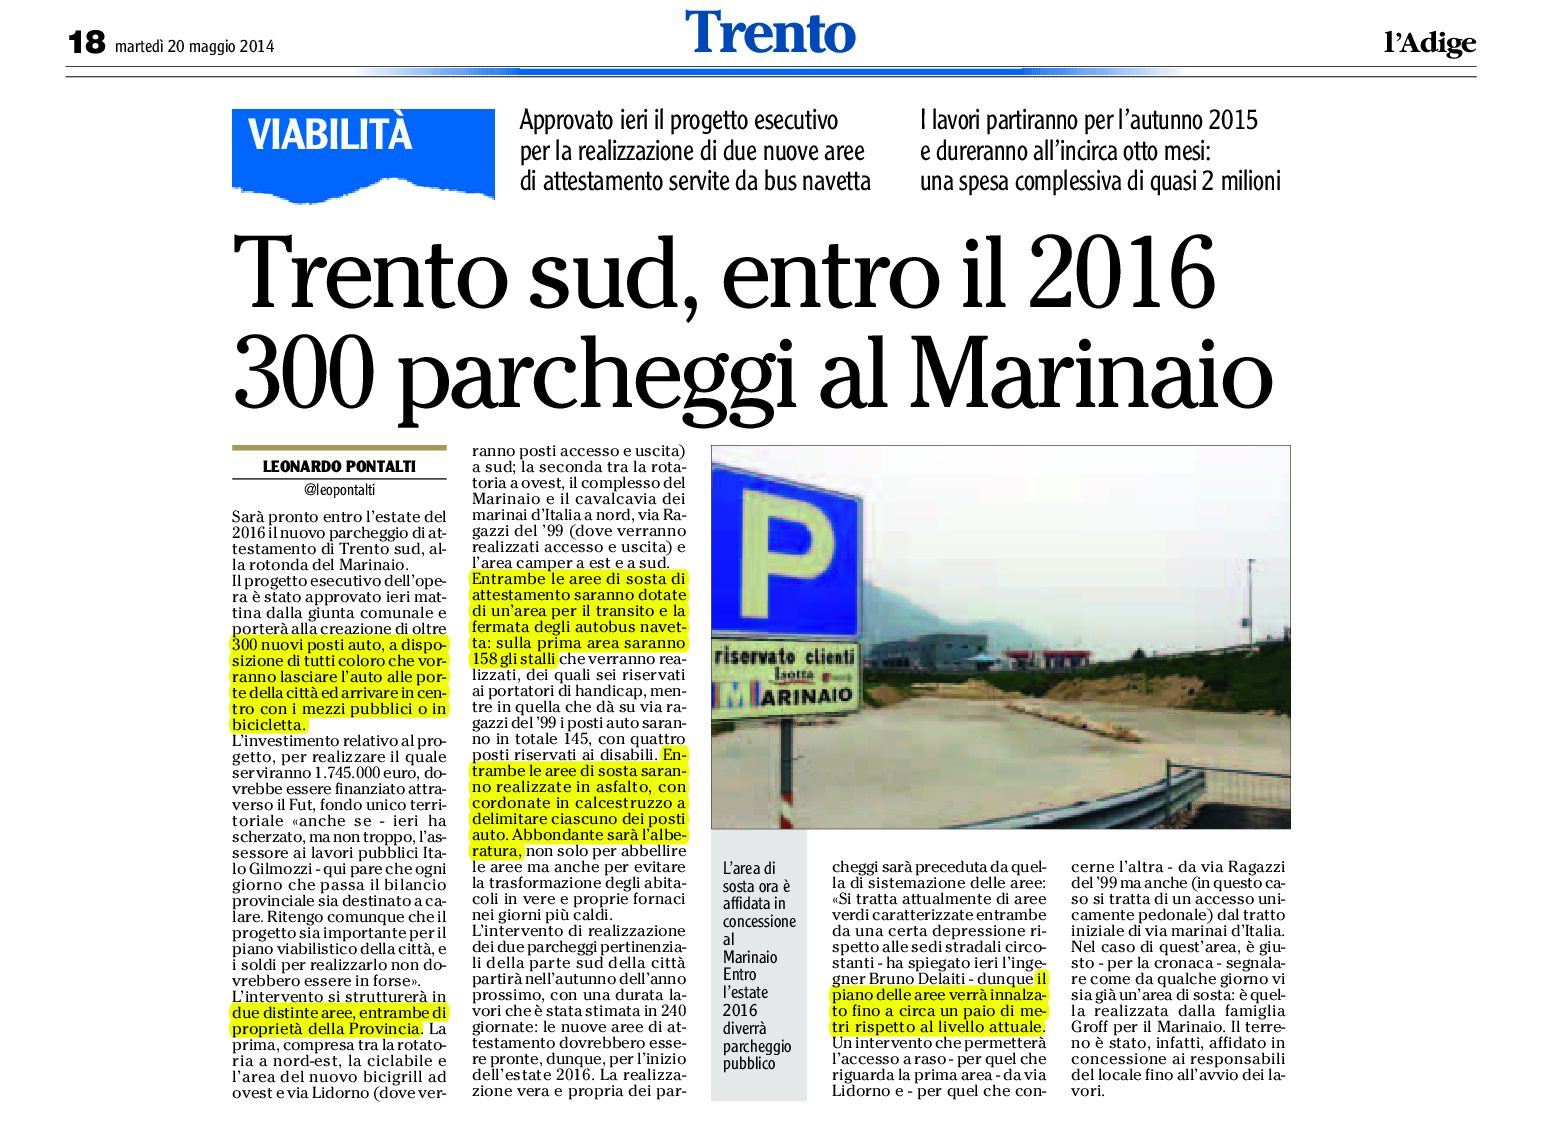 Trento sud: entro il 2016, 300 parcheggi al marinaio